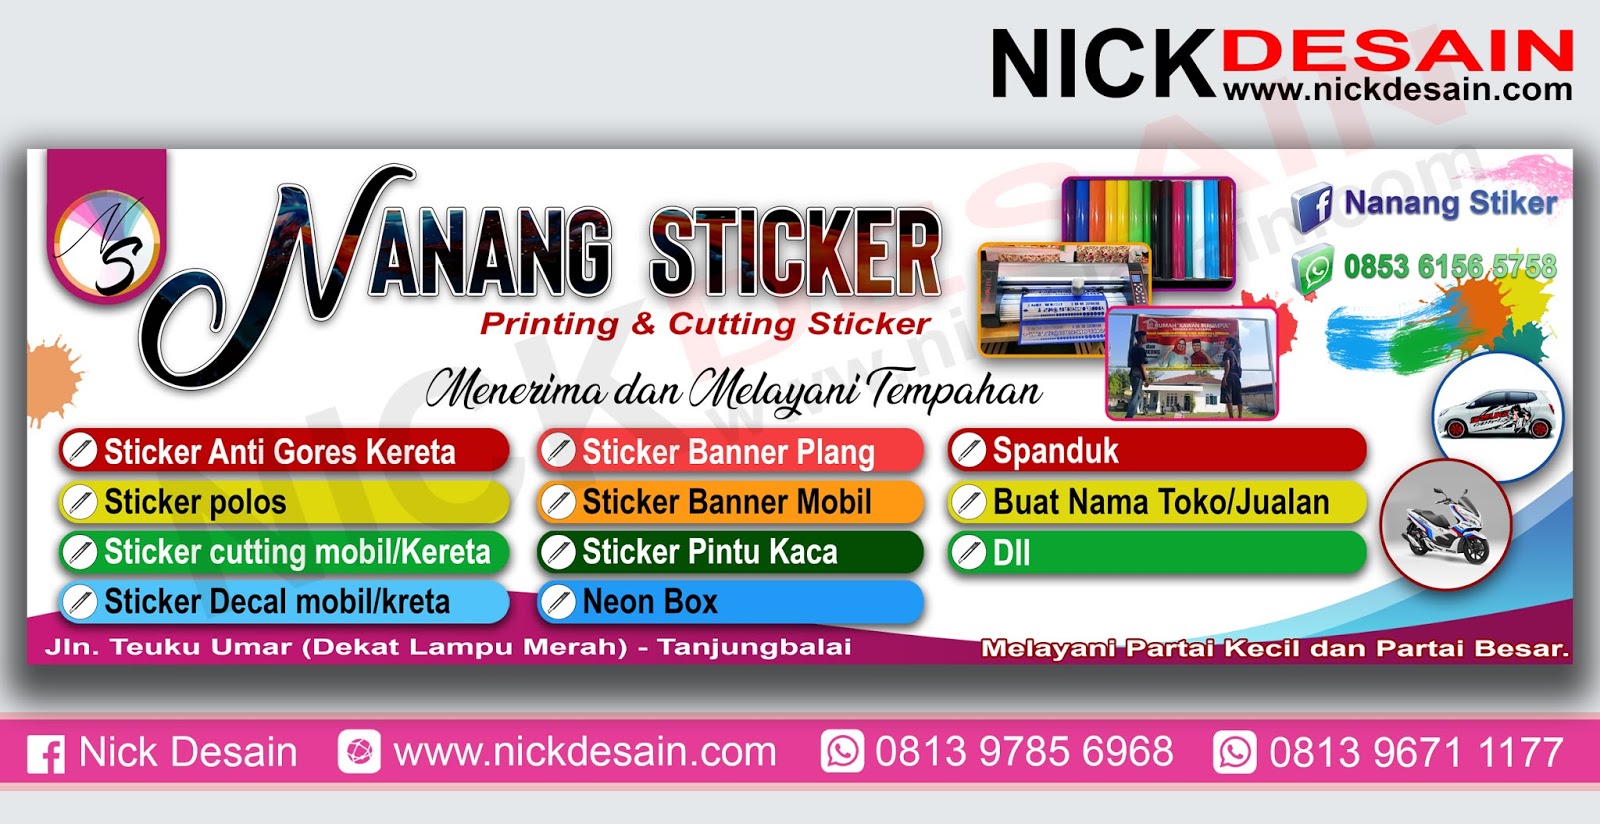 Contoh Desain Banner Percetakan Percetakan Tanjungbalai Percetakan Tanjungbalai Desain Online